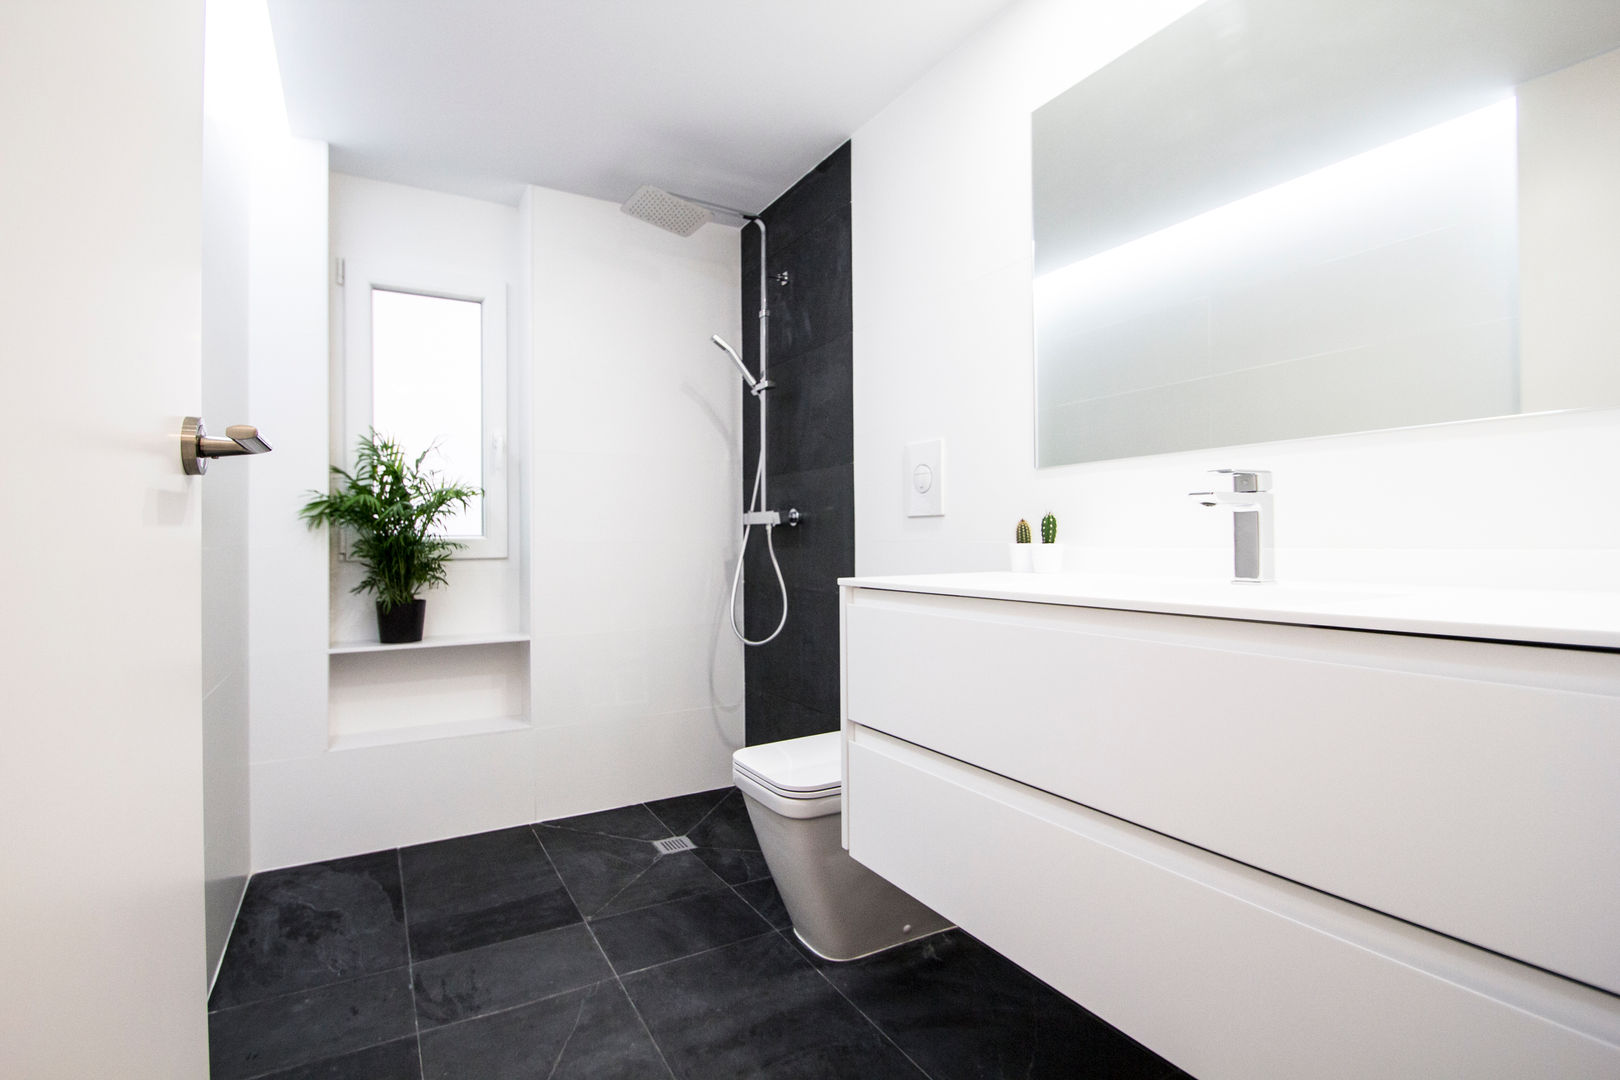 Baño de pizarra DonateCaballero Arquitectos Baños de estilo minimalista baño,pizarra negra